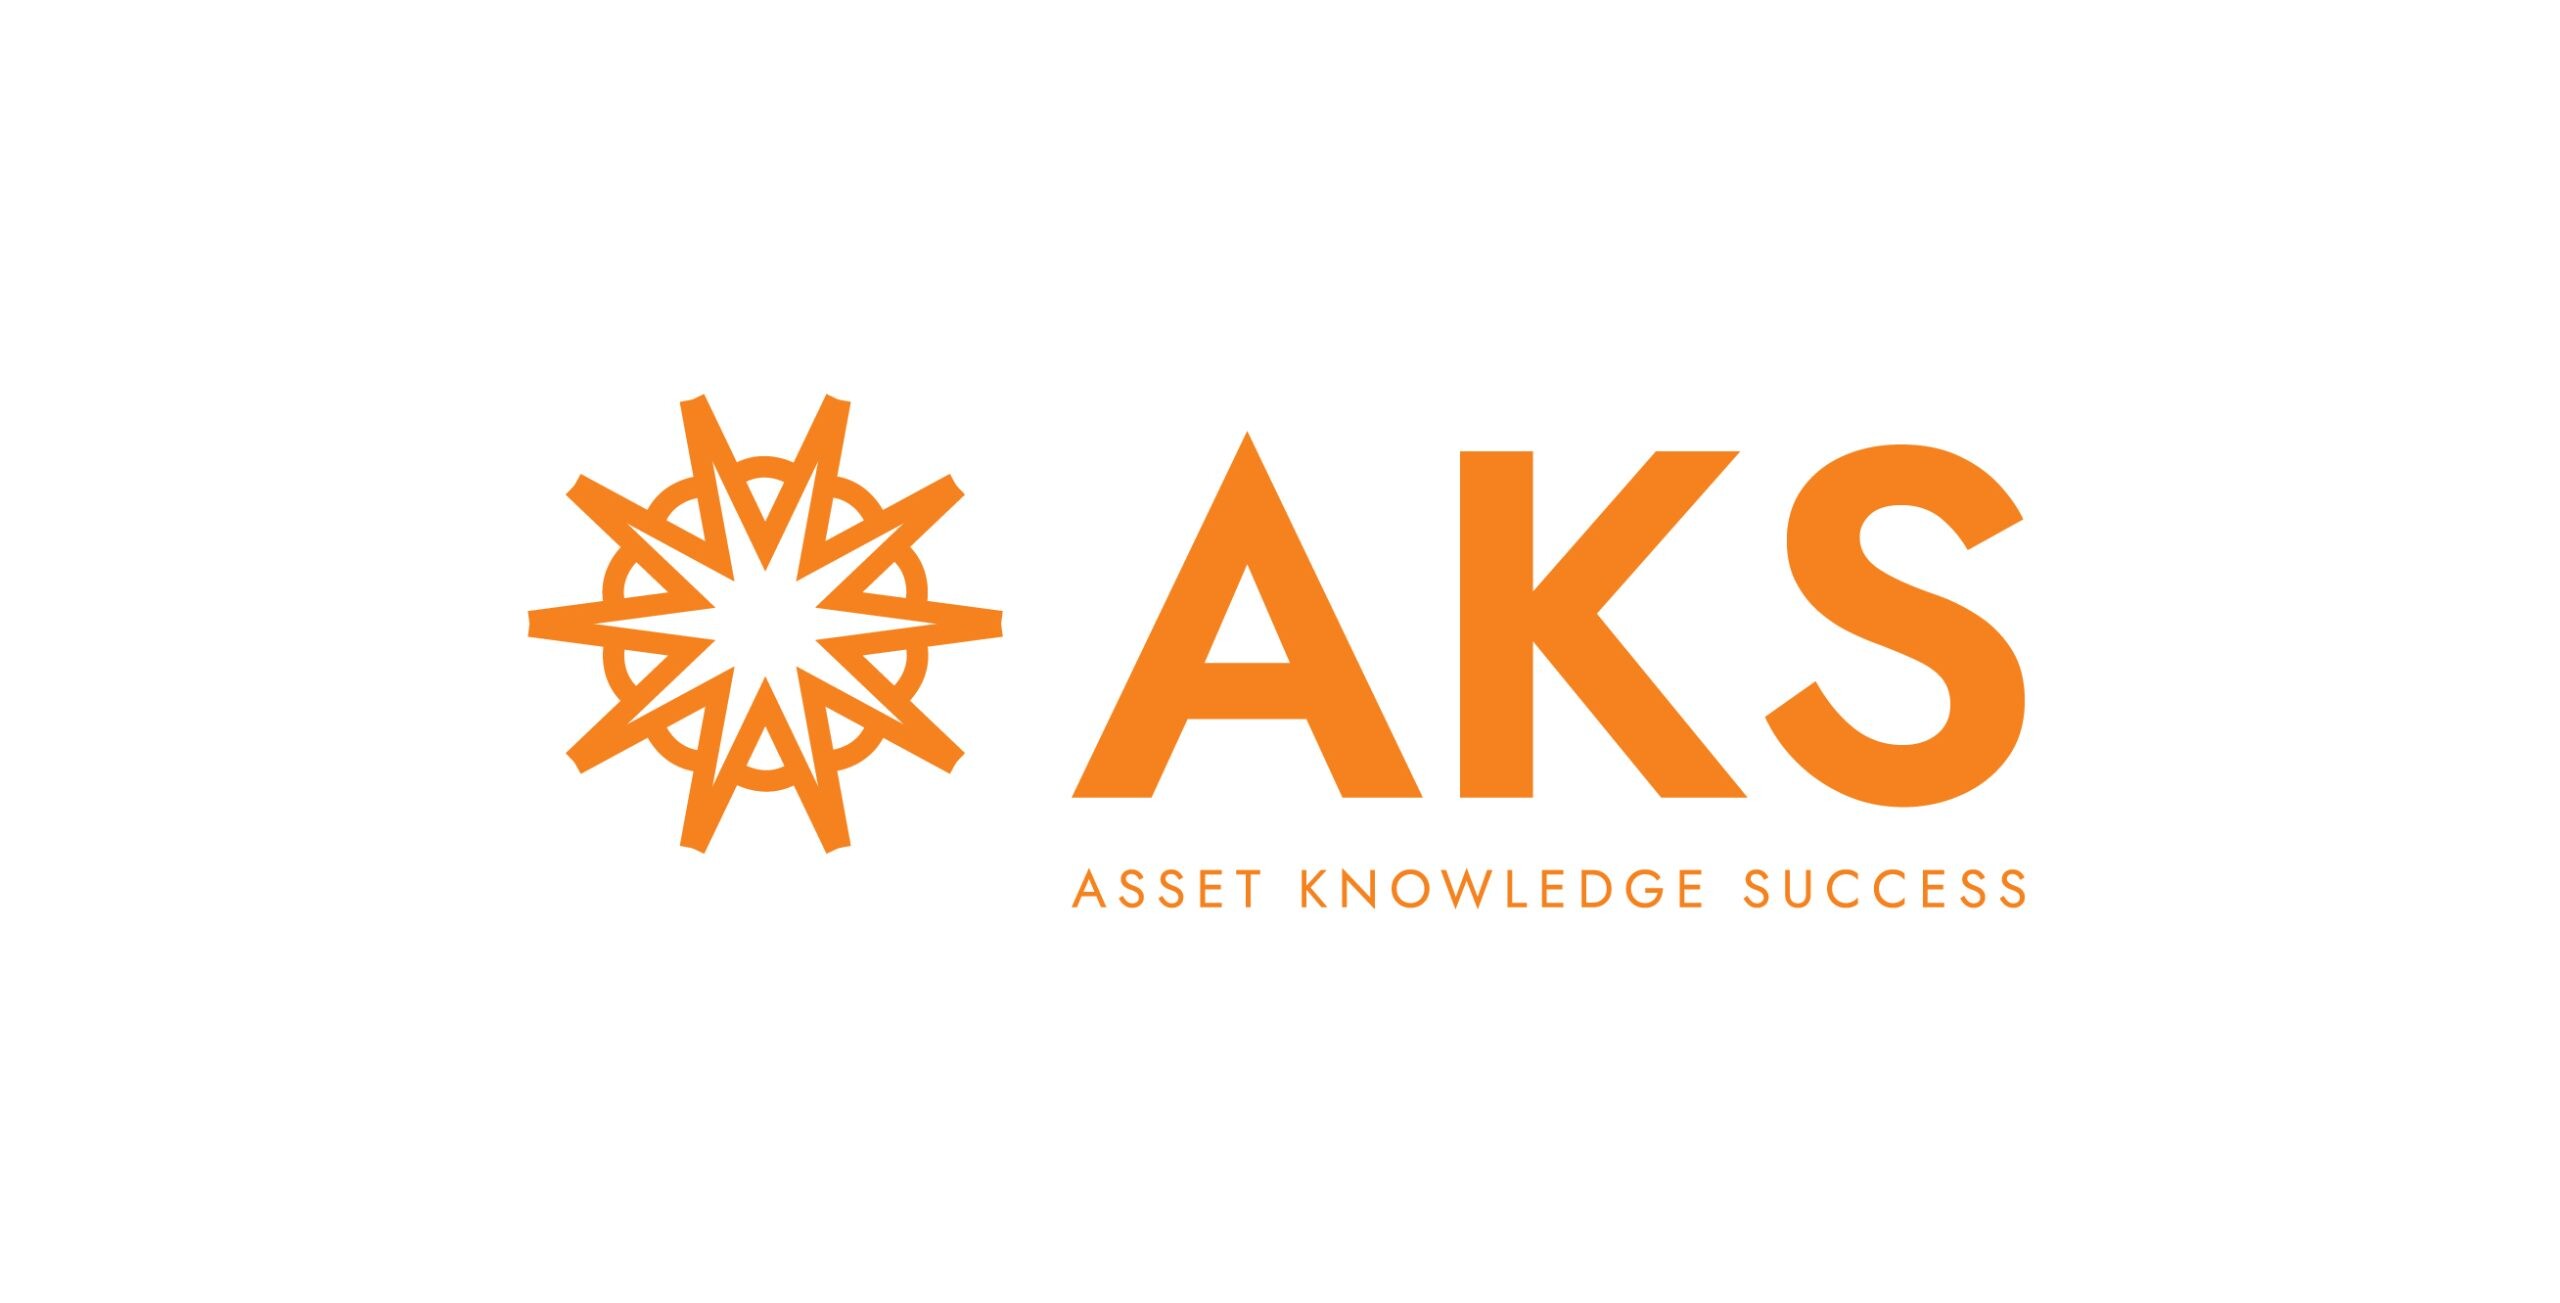 'AQ' รีแบรนด์ดิ้งสู่ 'AKS' ฉลองใหญ่ ก้าวเข้าสู่ปีที่ 11 จัดแคมเปญโครงการบ้าน ราคาดีที่สุด ในรอบทศวรรษ รับส่วนลดสูงสุดถึง 3 ล้านบาท!!!